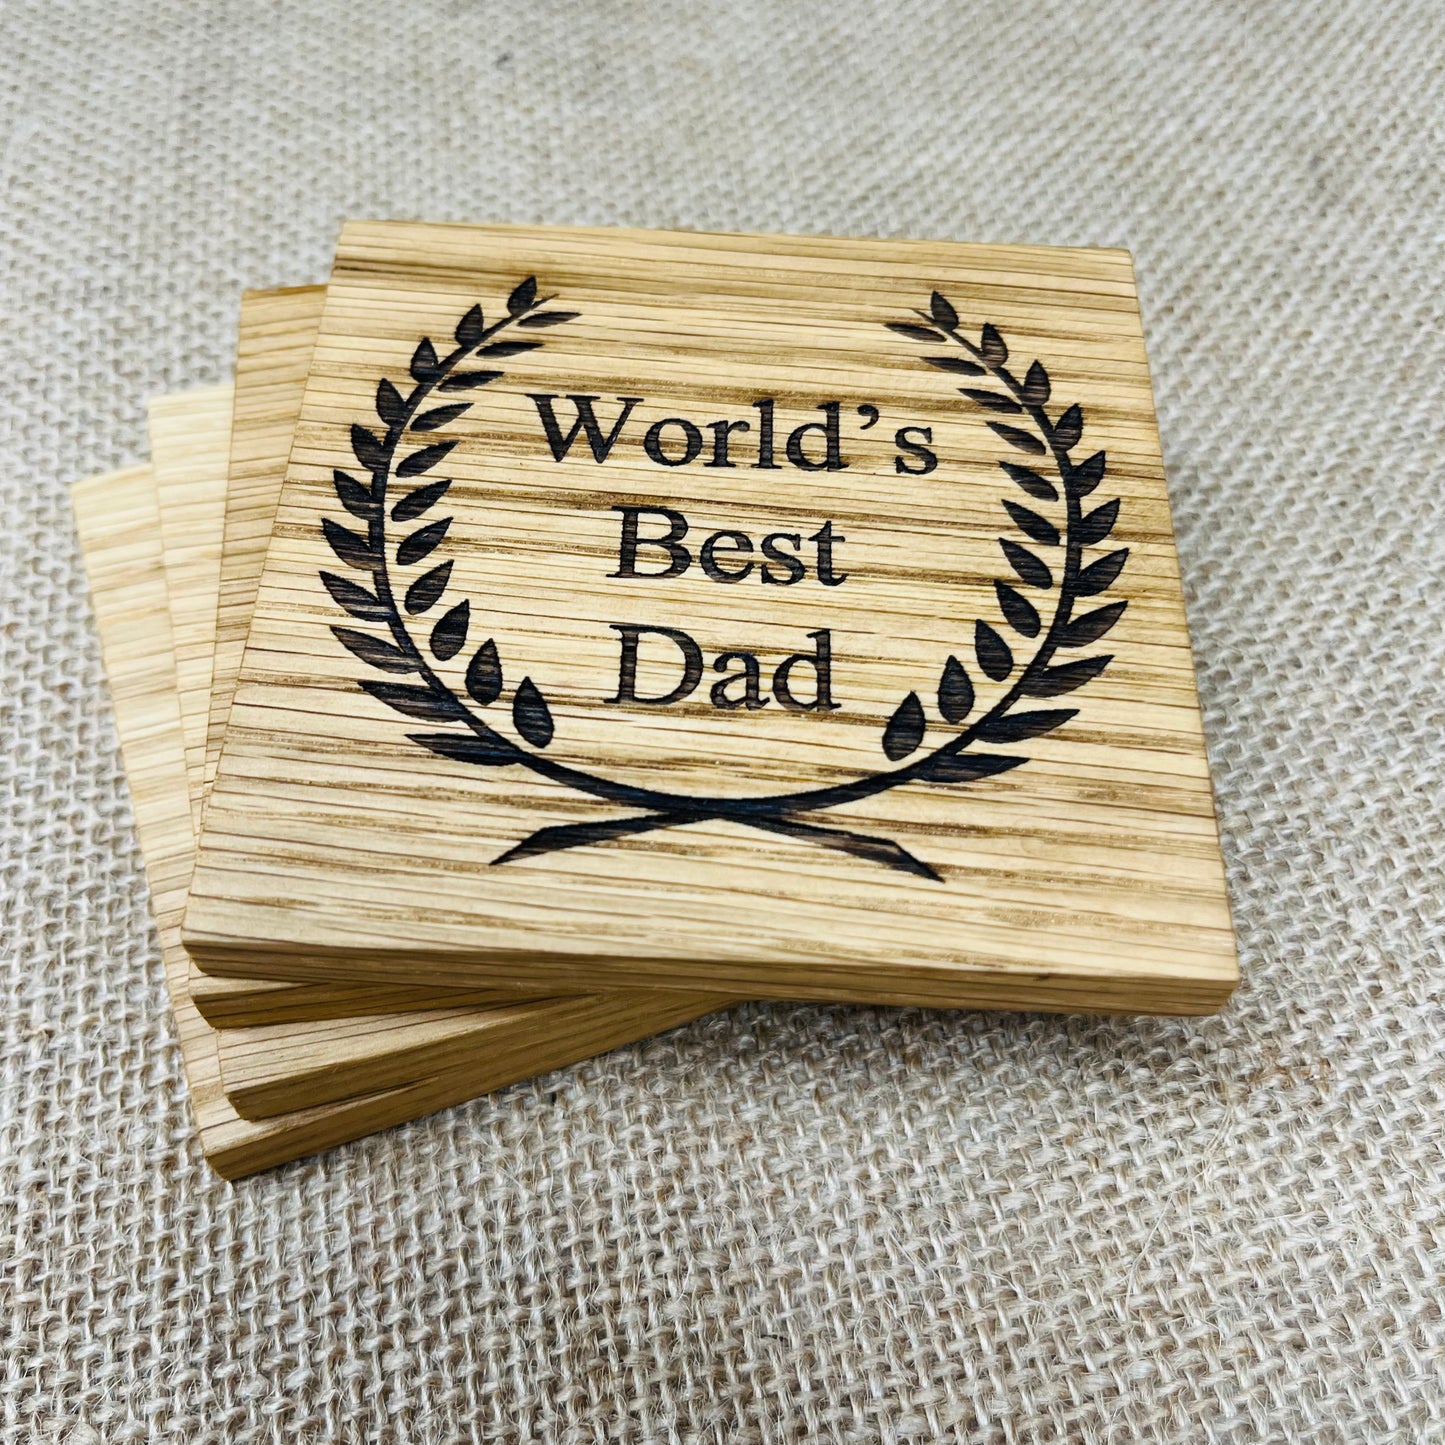 World's Best Dad Coaster - Engraved Solid Oak